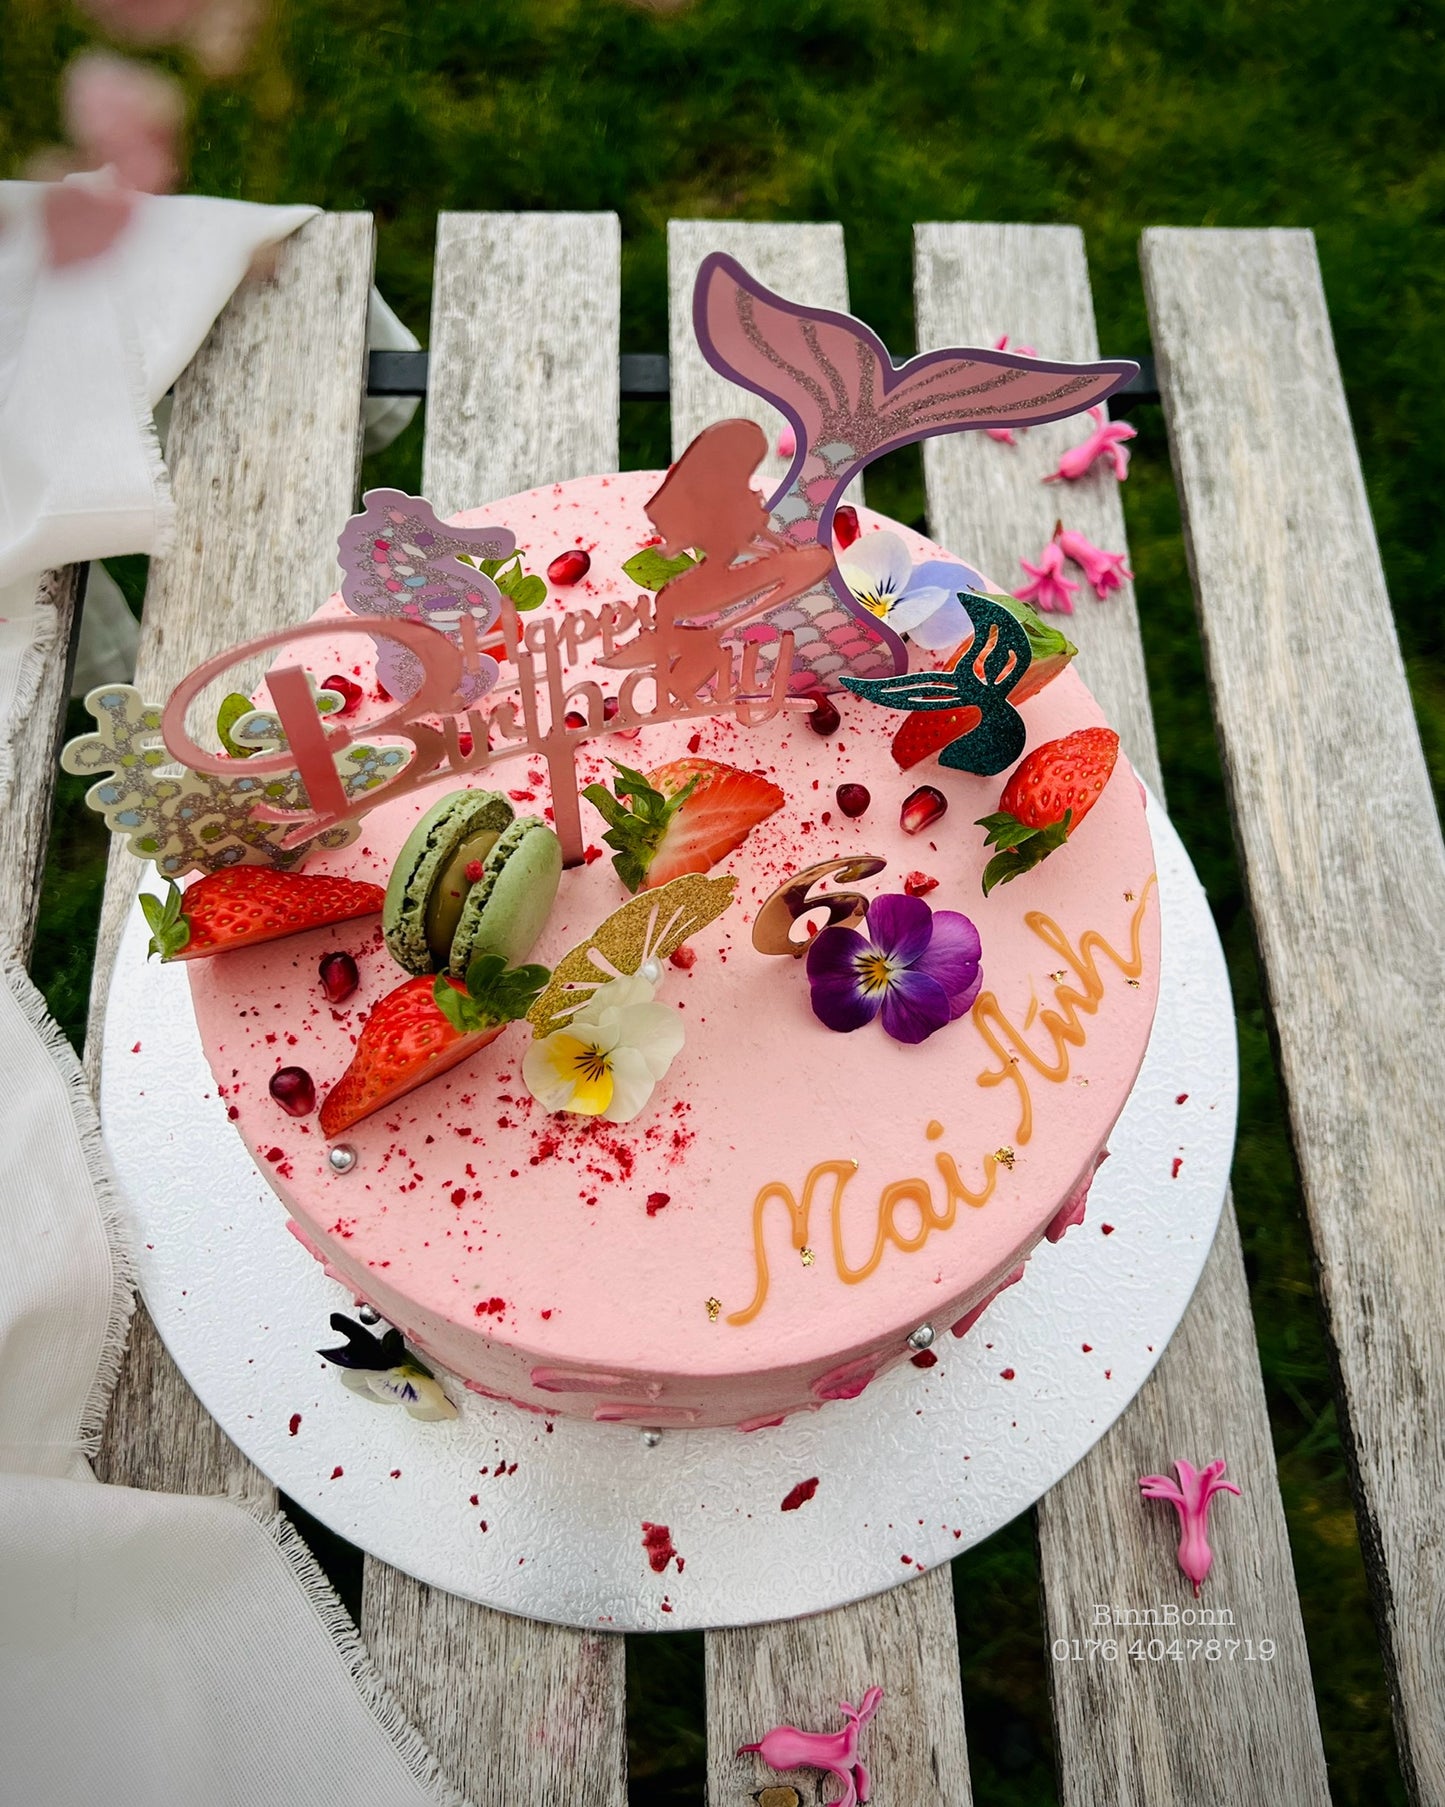 12. Torte "Pink Mermaid" zum Kindergeburtstag gefüllt mit frischen Beeren 22 cm